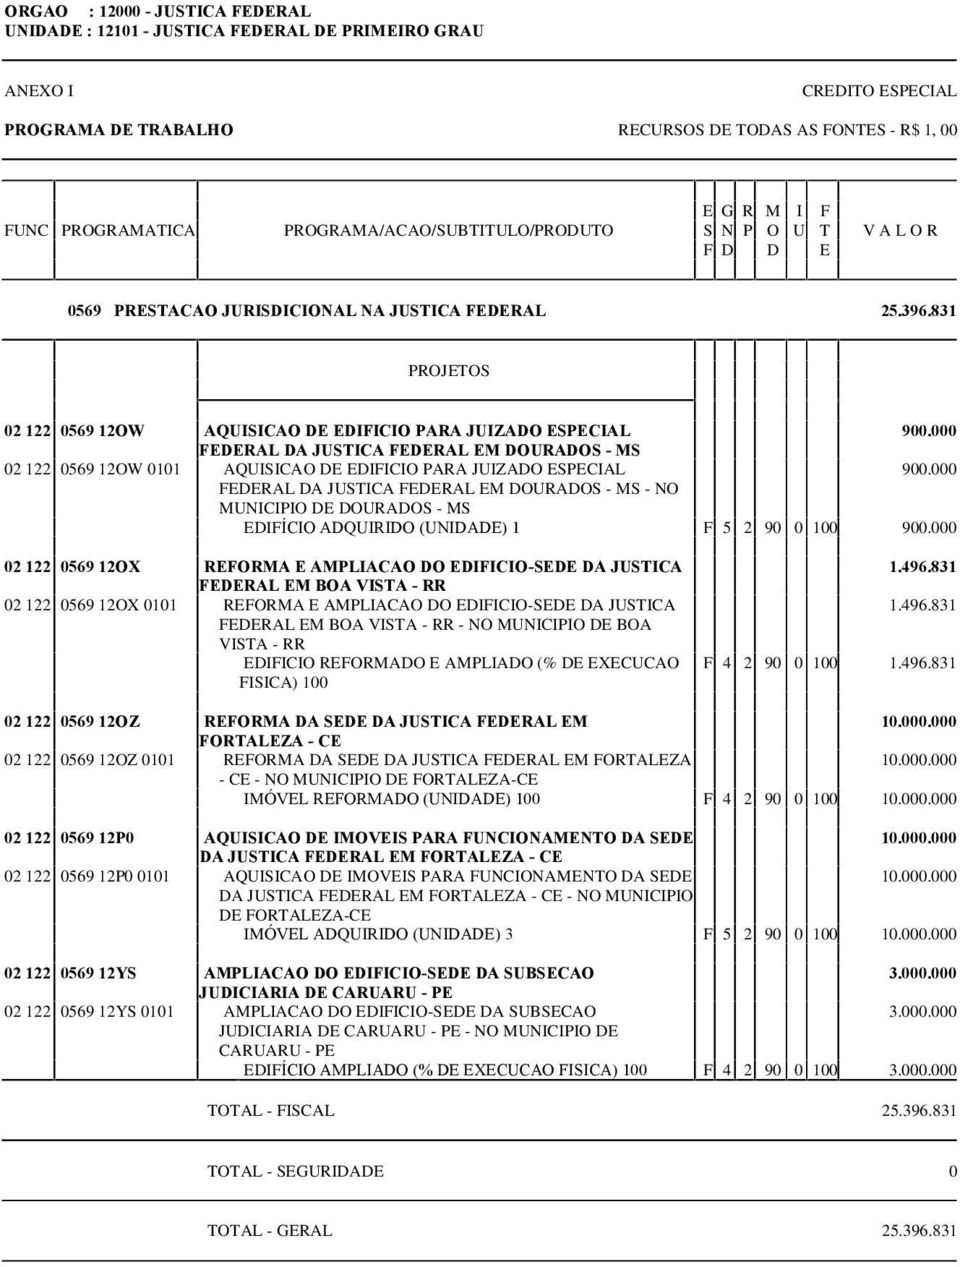 000 FEDERAL DA JUSTICA FEDERAL EM DOURADOS - MS - NO MUNICIPIO DE DOURADOS - MS EDIFÍCIO ADQUIRIDO (UNIDADE) 1 F 5 2 90 0 100 900.